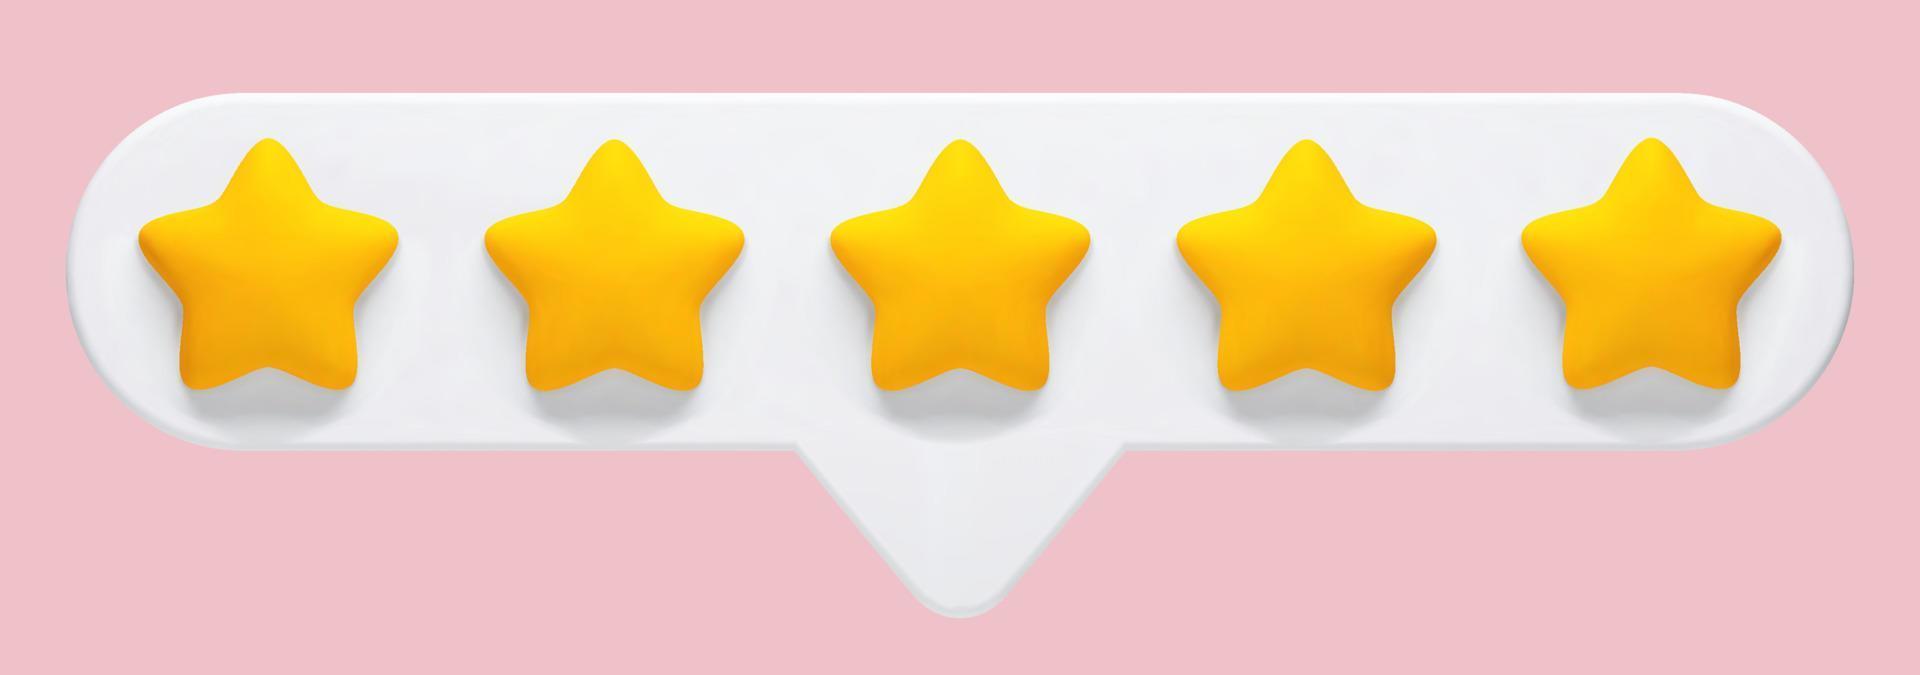 vektor 3d realistische illustration von 5-sternen-feedback, bewertung eines produkts oder einer dienstleistung auf einem rosa hintergrund